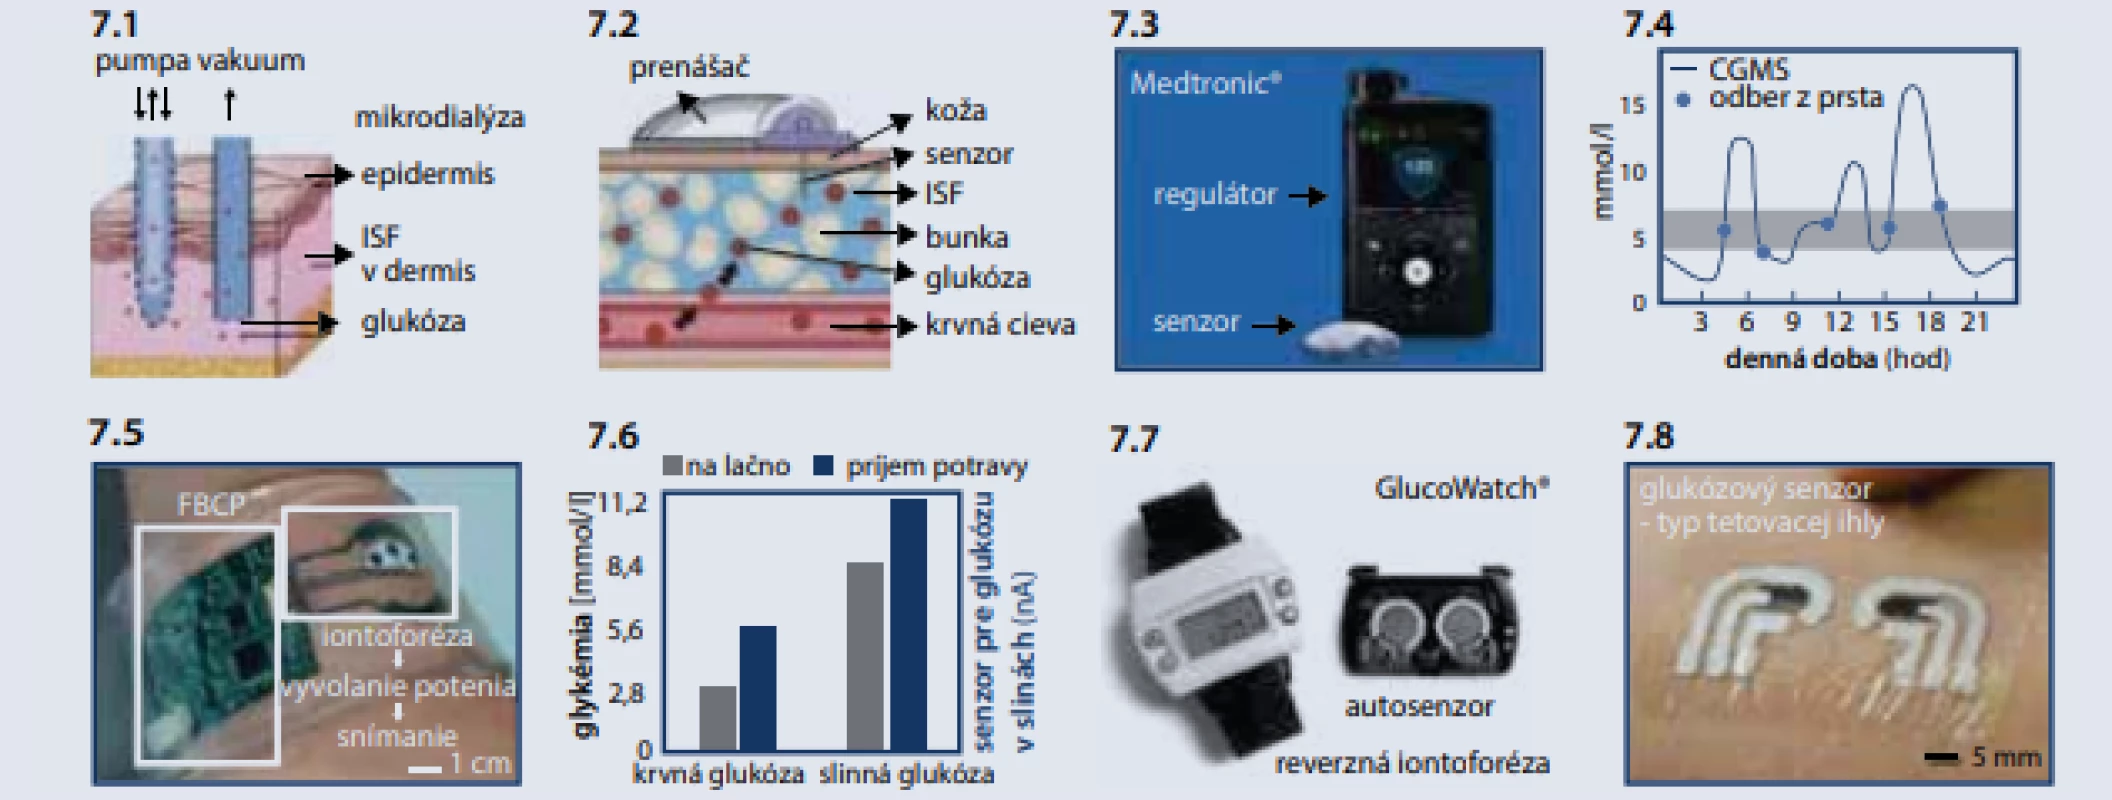 Monitorovanie glukózy v intersticiálnej tekutine [12]